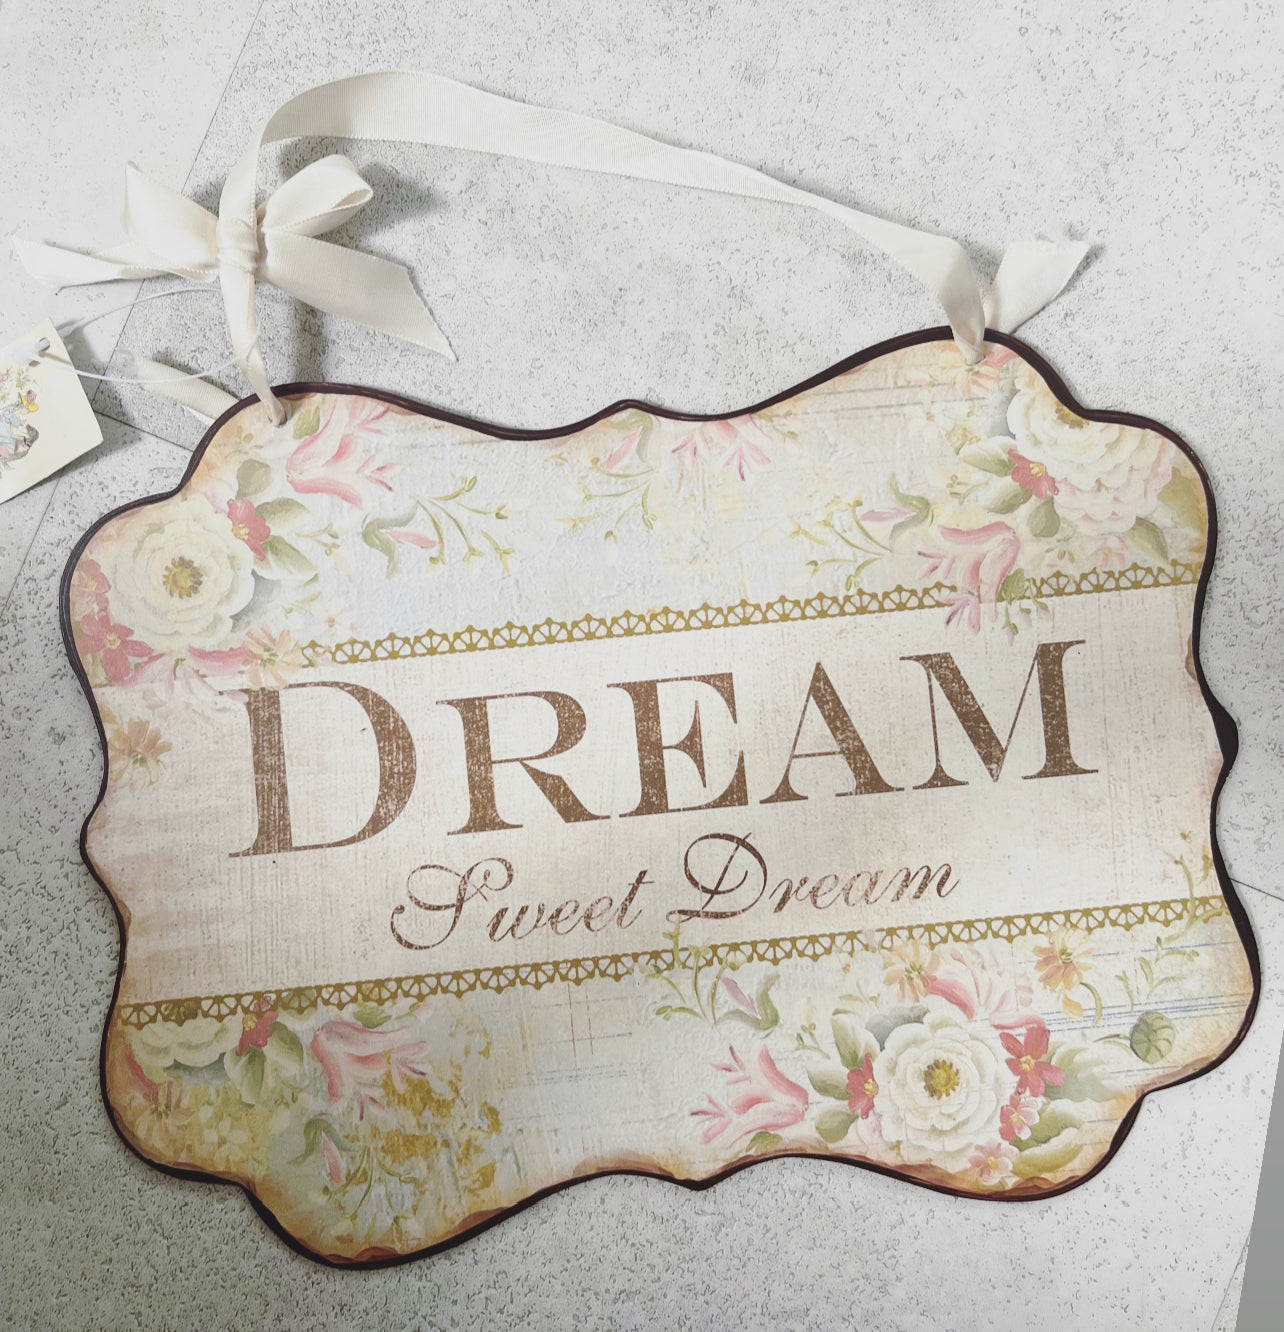 “DREAM” home plaque / sign